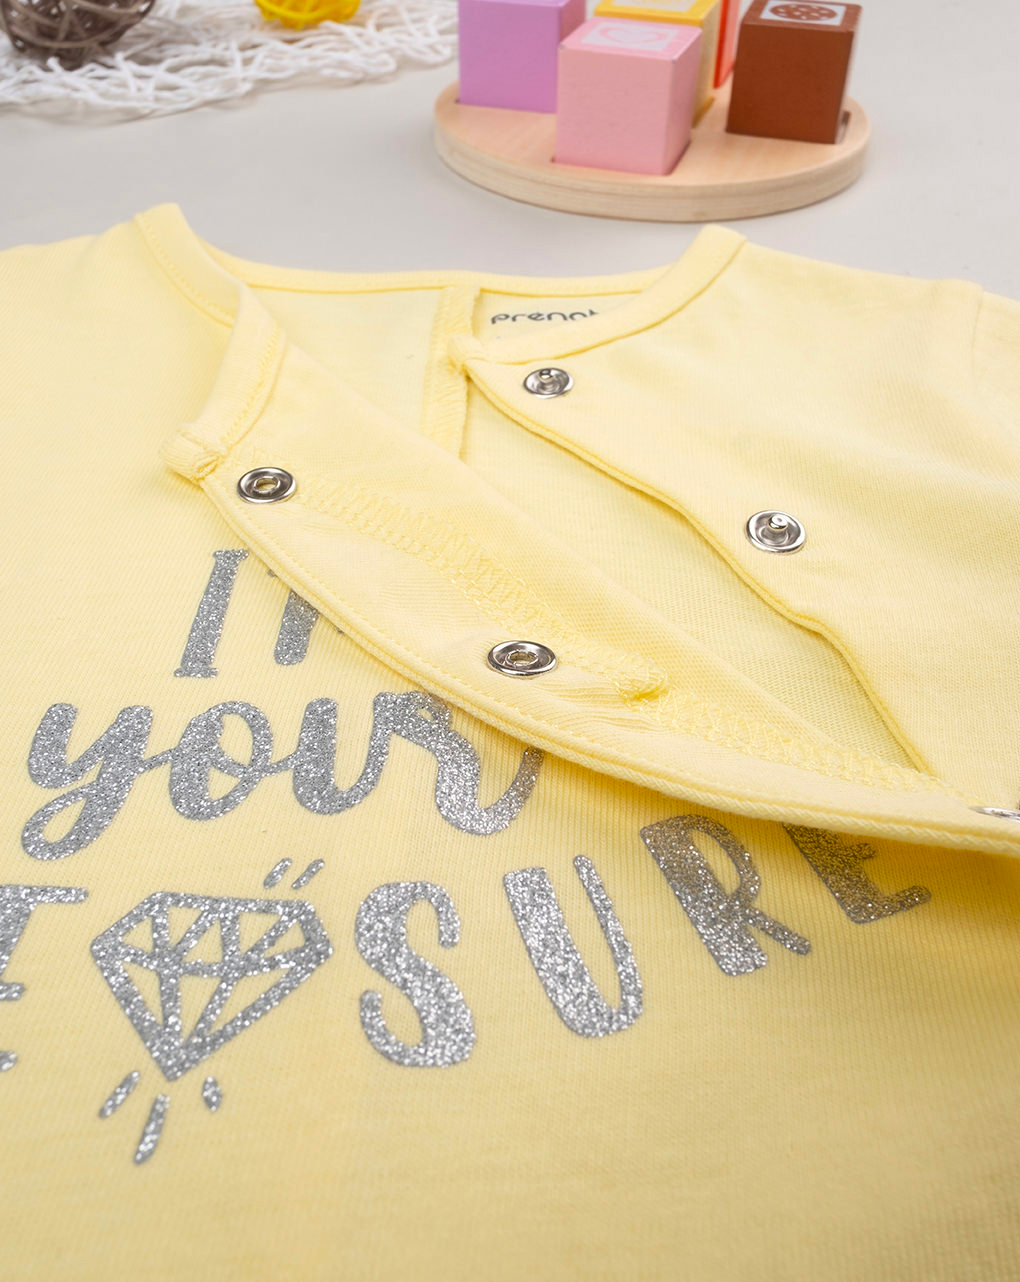 Pelele amarillo para bebé niña con escritura - Prénatal